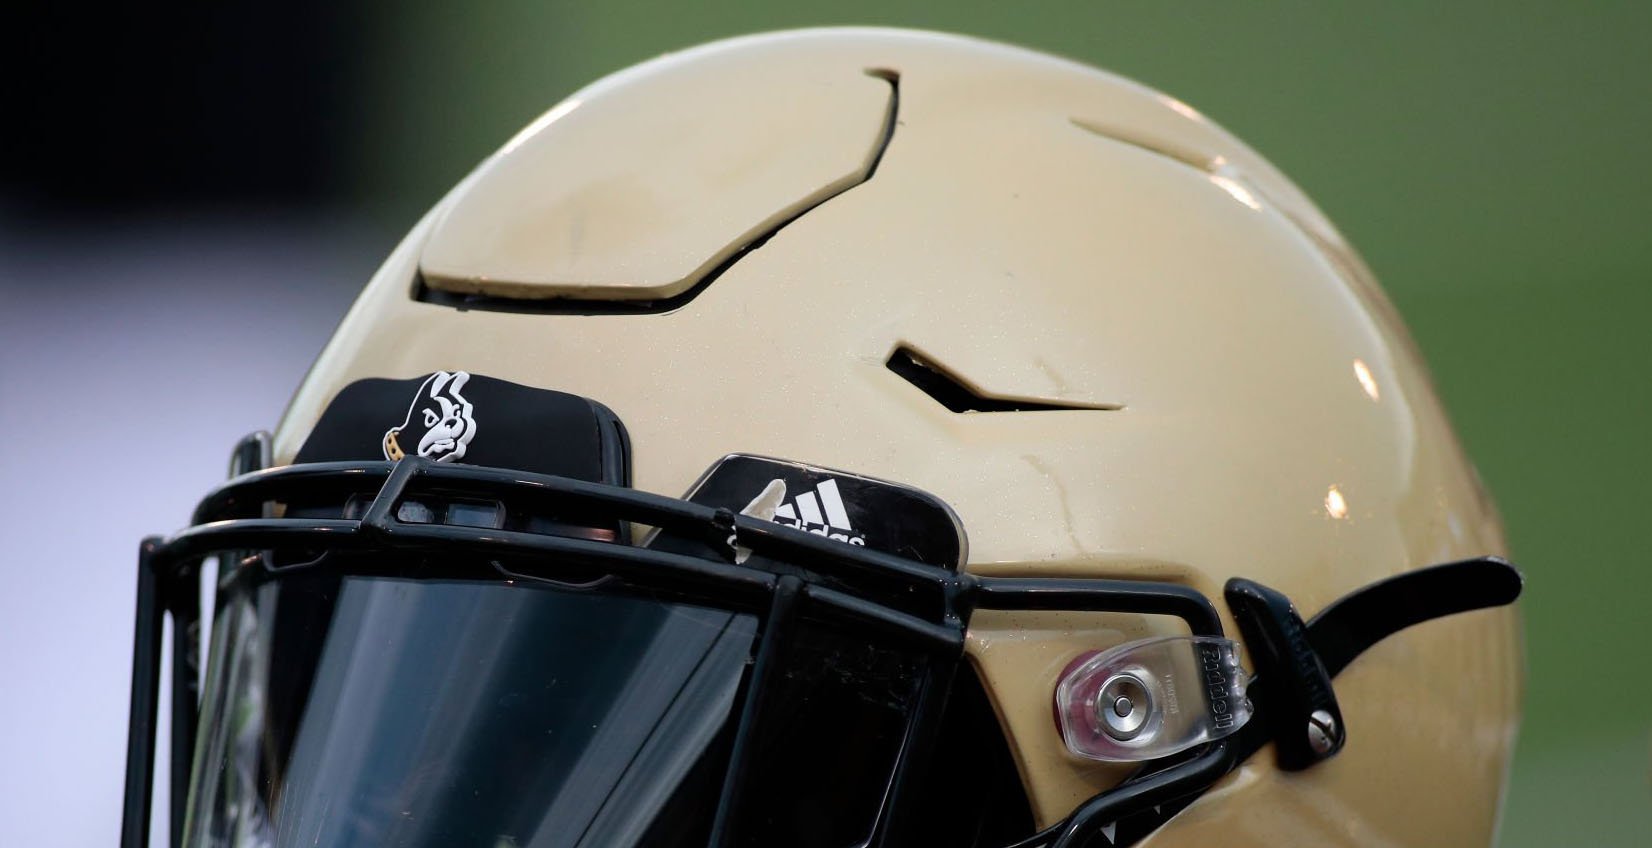 Wofford helmet vs Virginia Tech